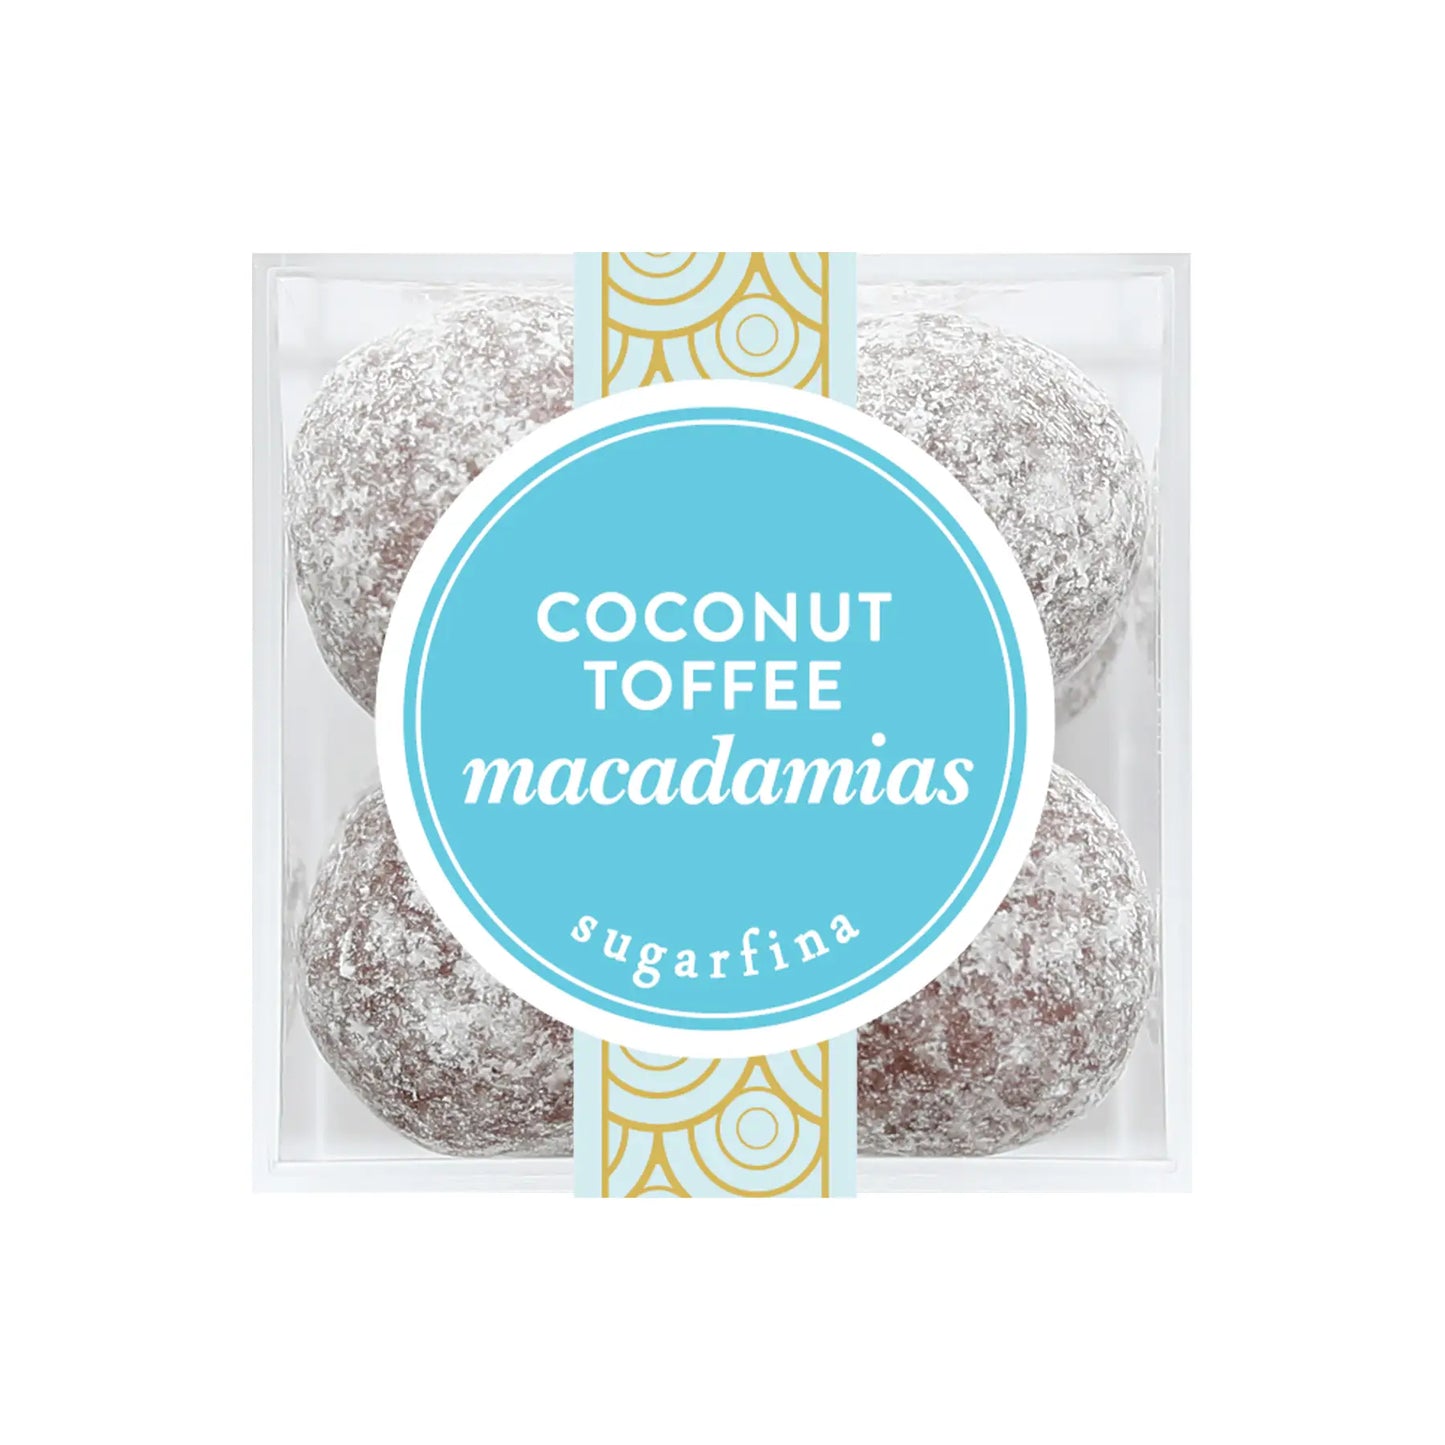 Coconut Toffee Macadamias